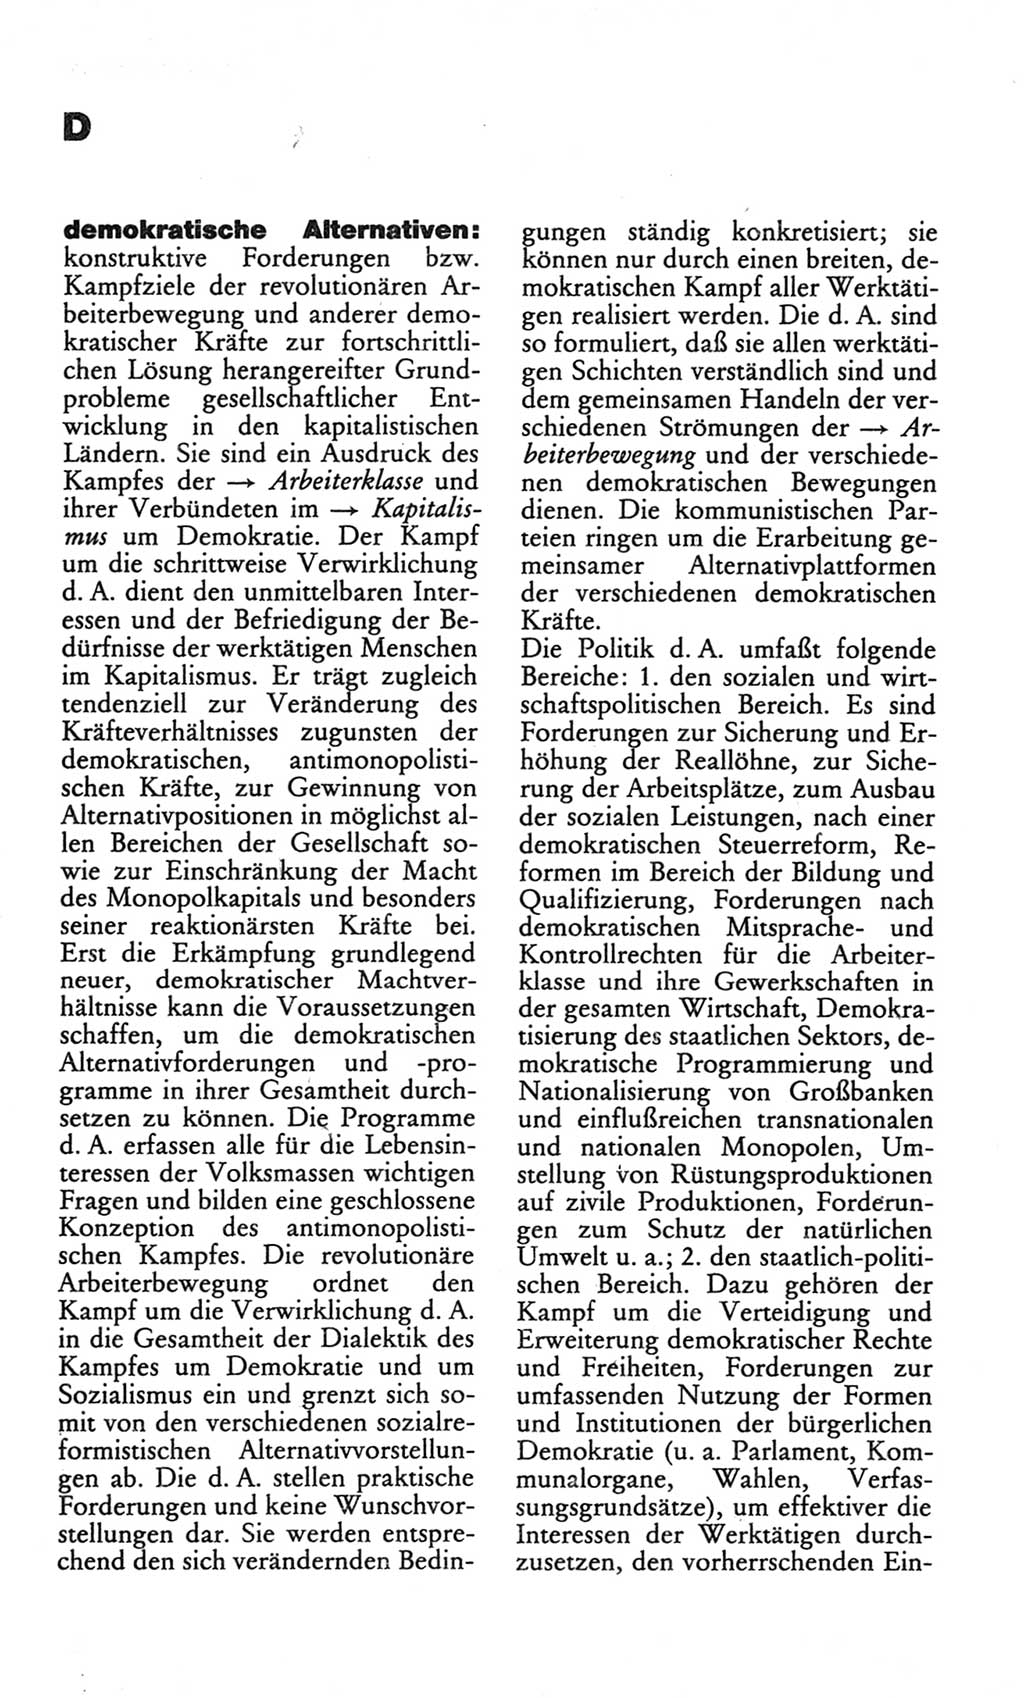 Wörterbuch des wissenschaftlichen Kommunismus [Deutsche Demokratische Republik (DDR)] 1982, Seite 70 (Wb. wiss. Komm. DDR 1982, S. 70)